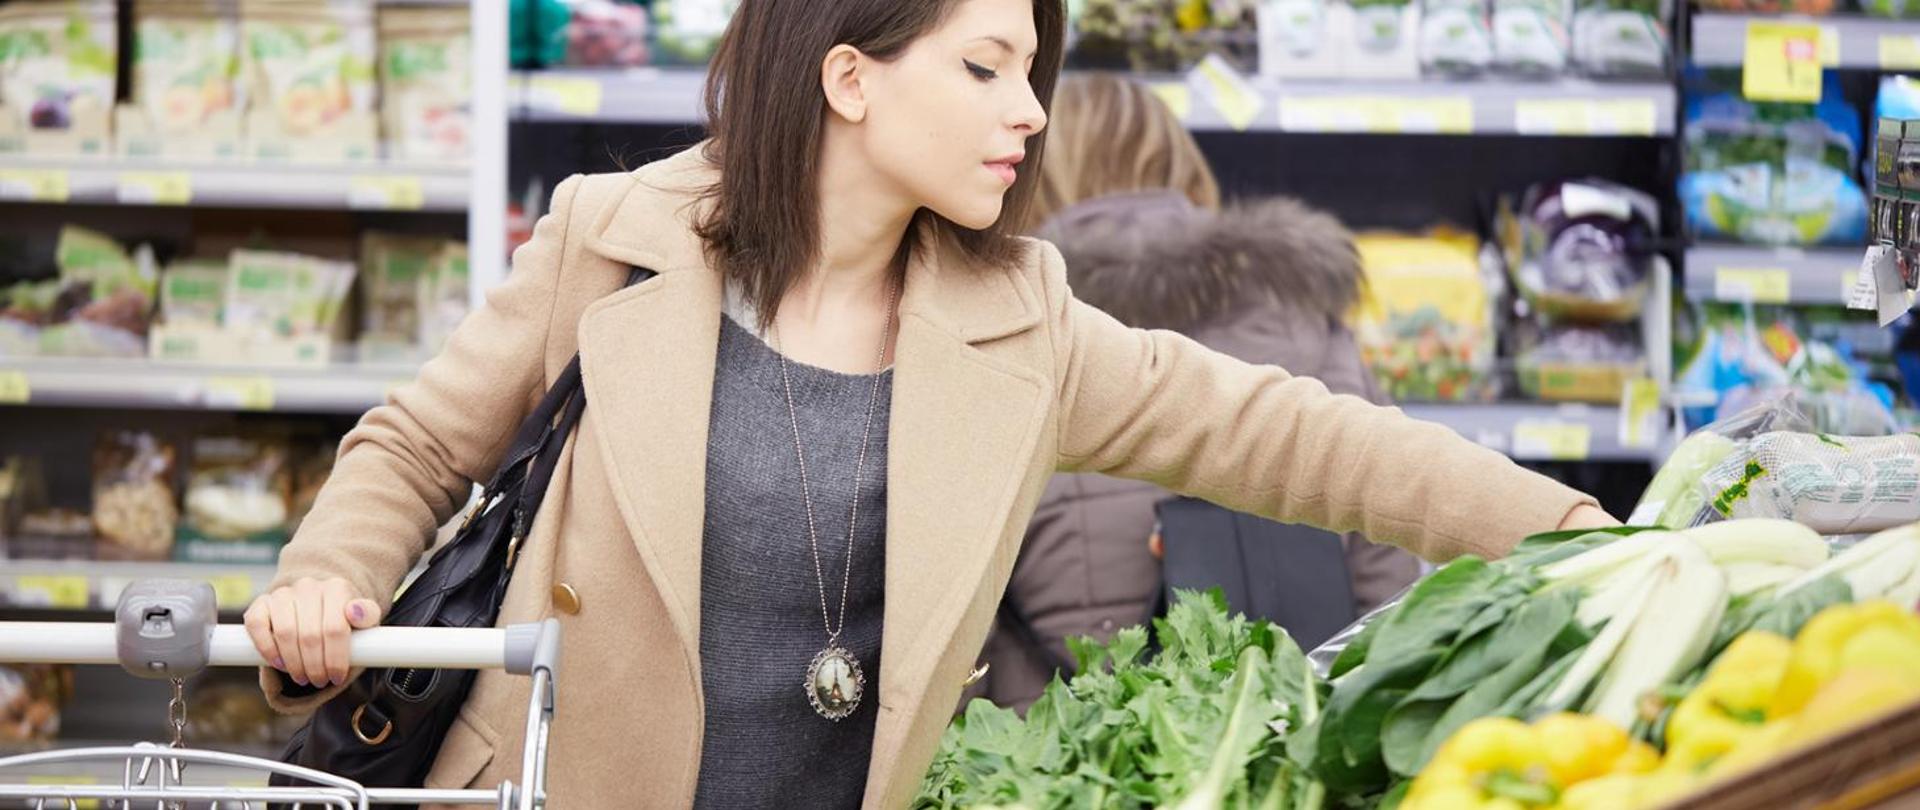 zdjęcie kobiety na zakupach spożywczych